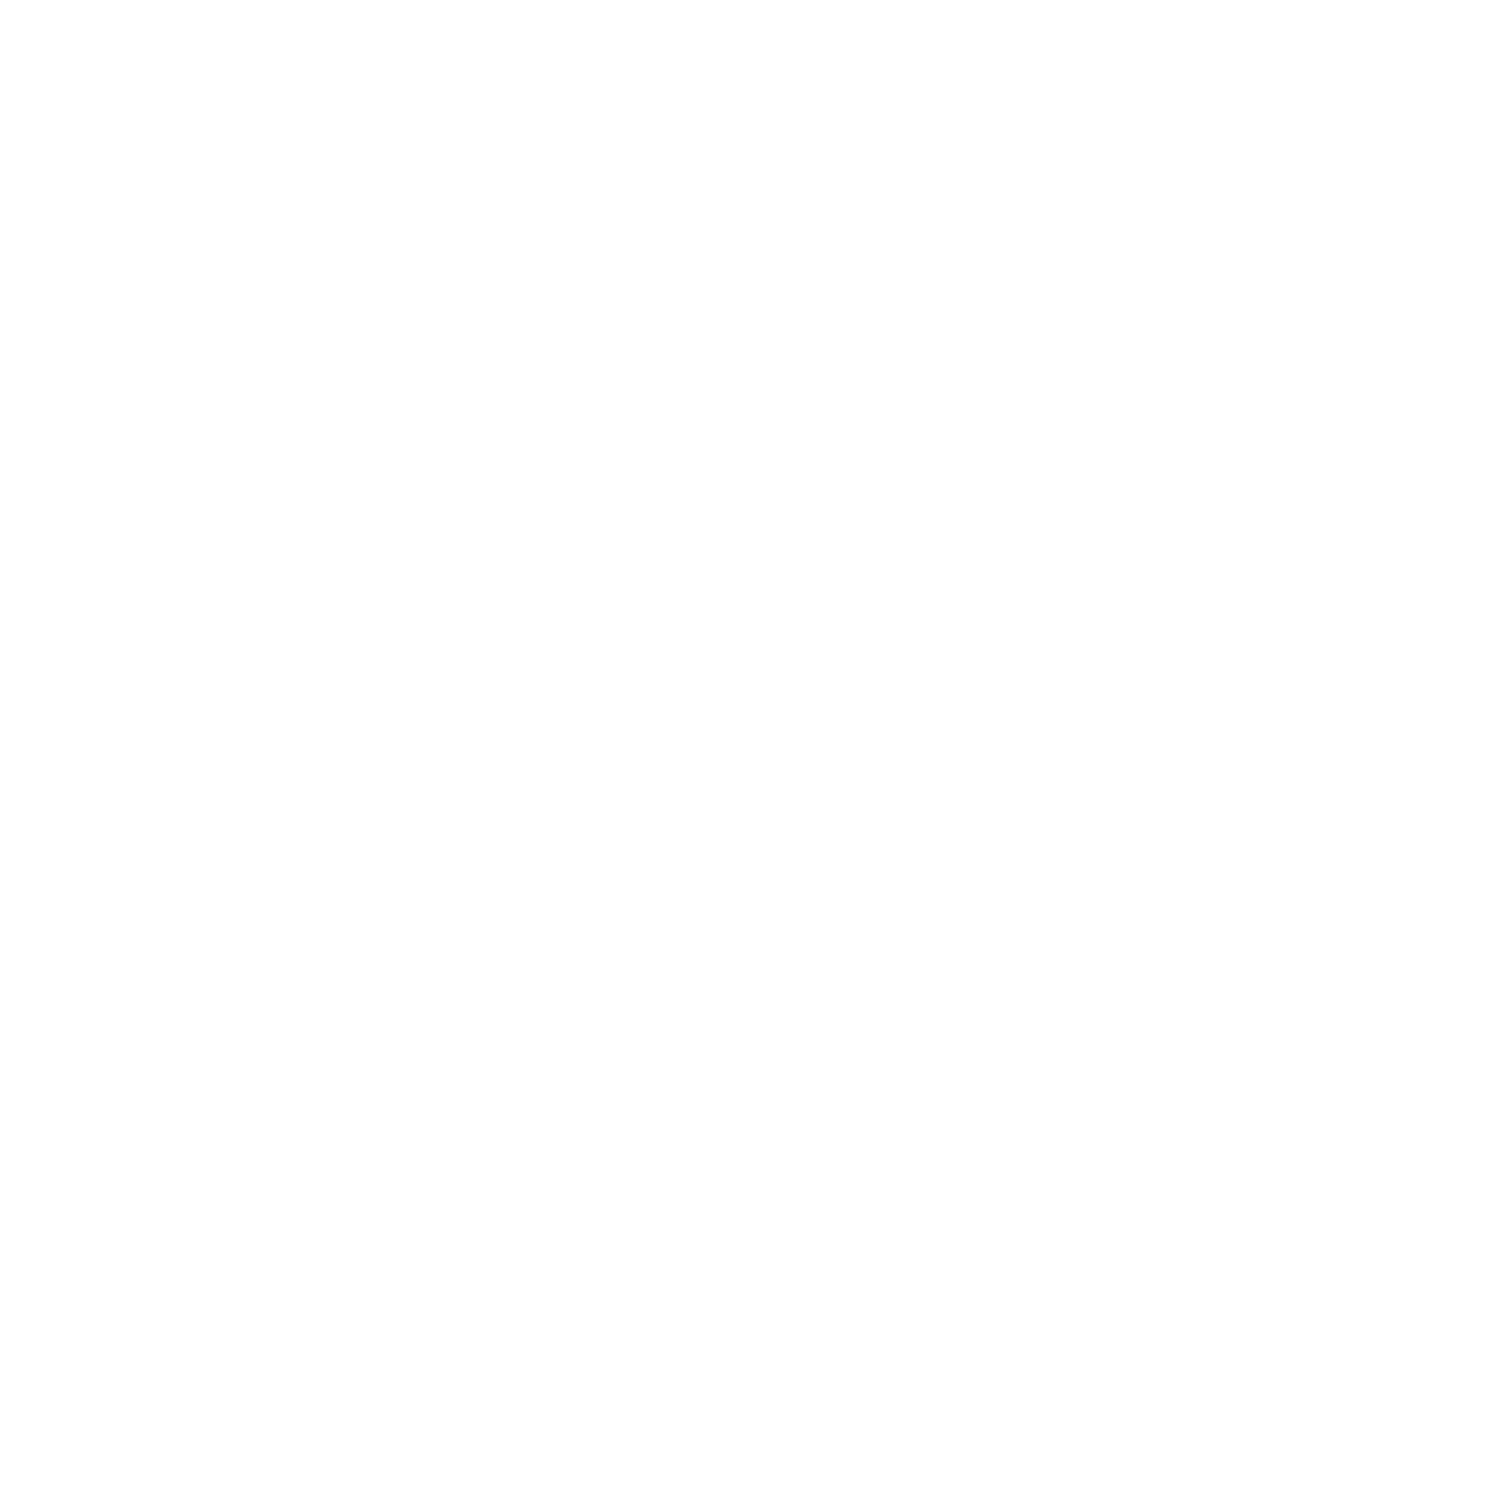 Lahing Kayumanggi Dance Company